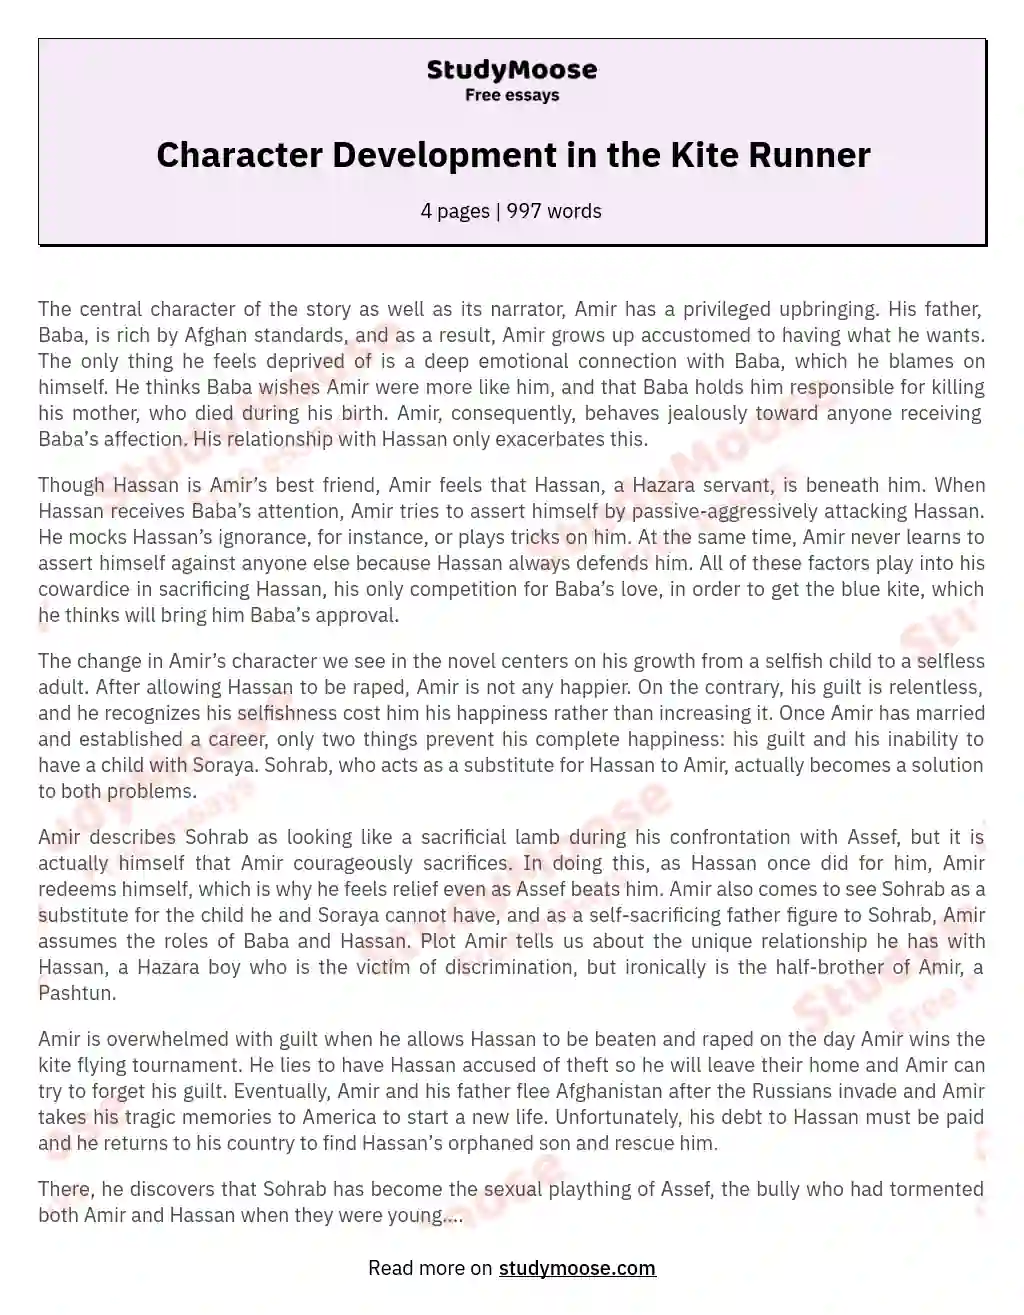 Character Development in the Kite Runner